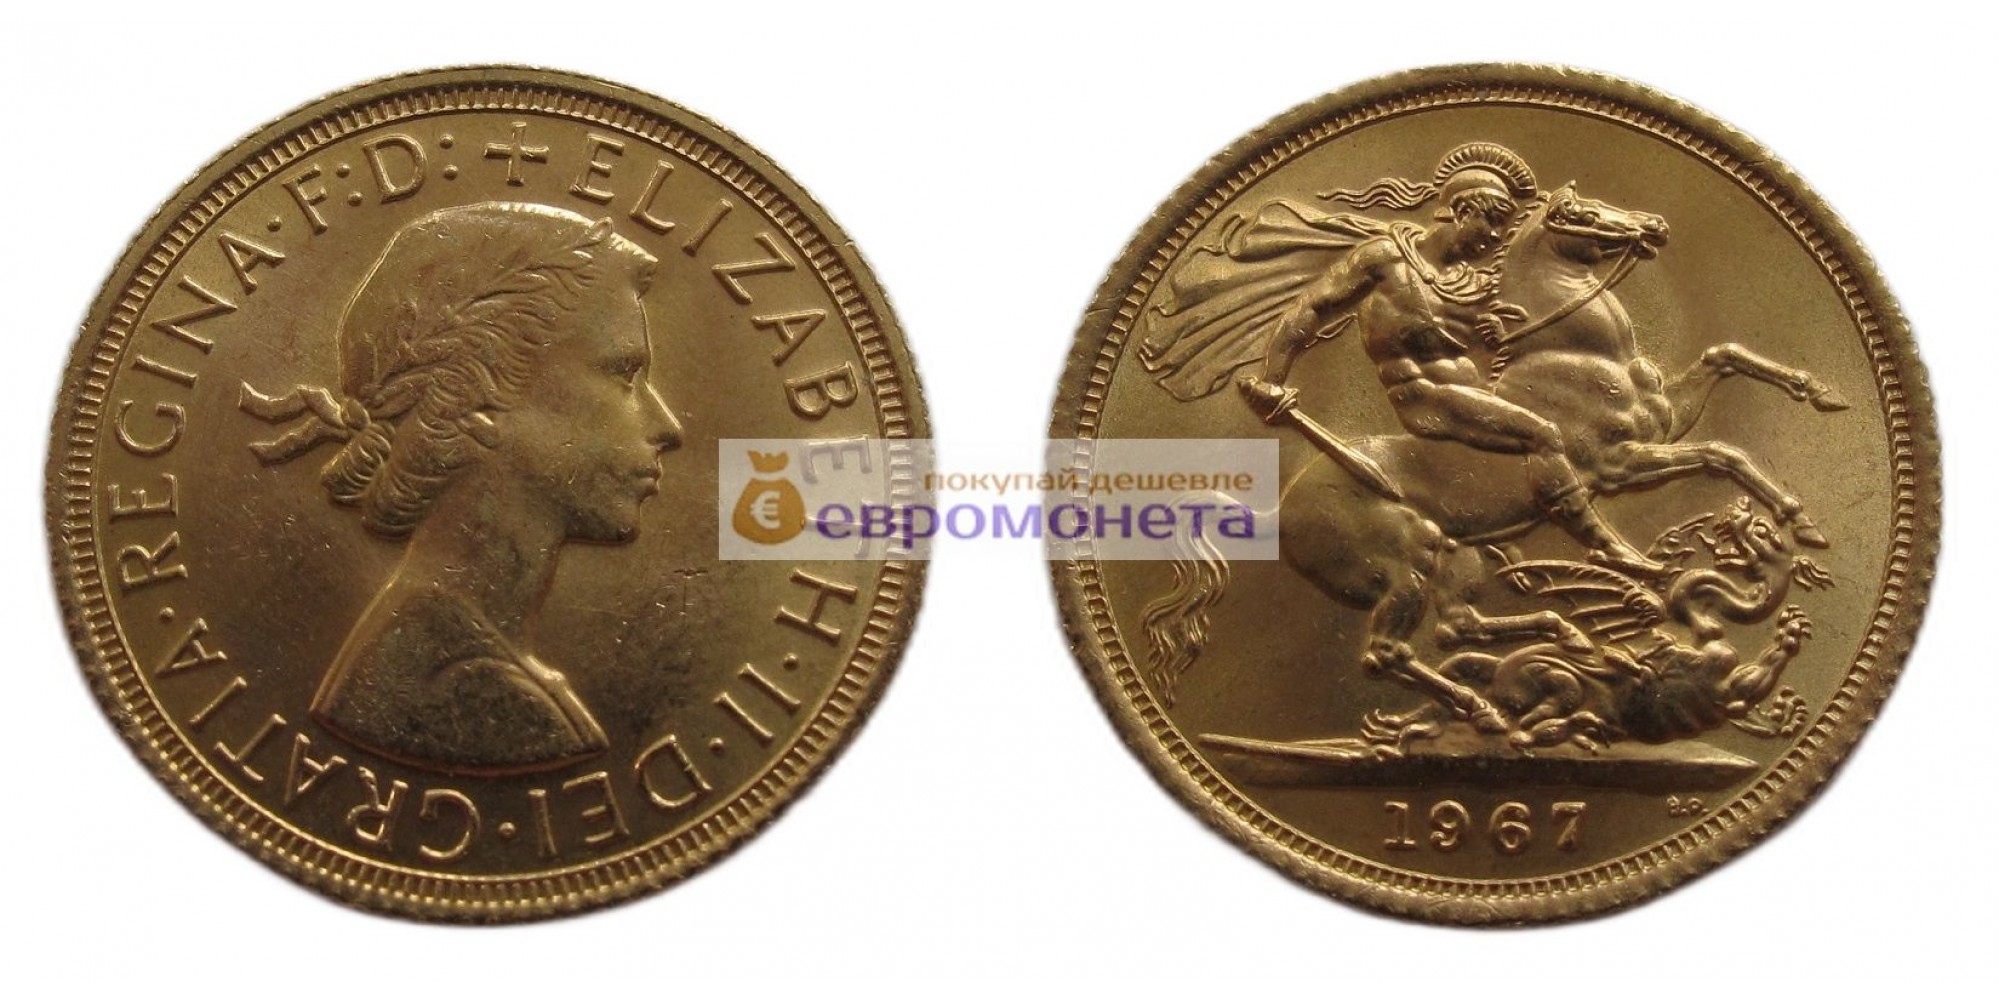 Великобритания 1 соверен 1967 год. Святой Георгий с драконом. Золото. АЦ